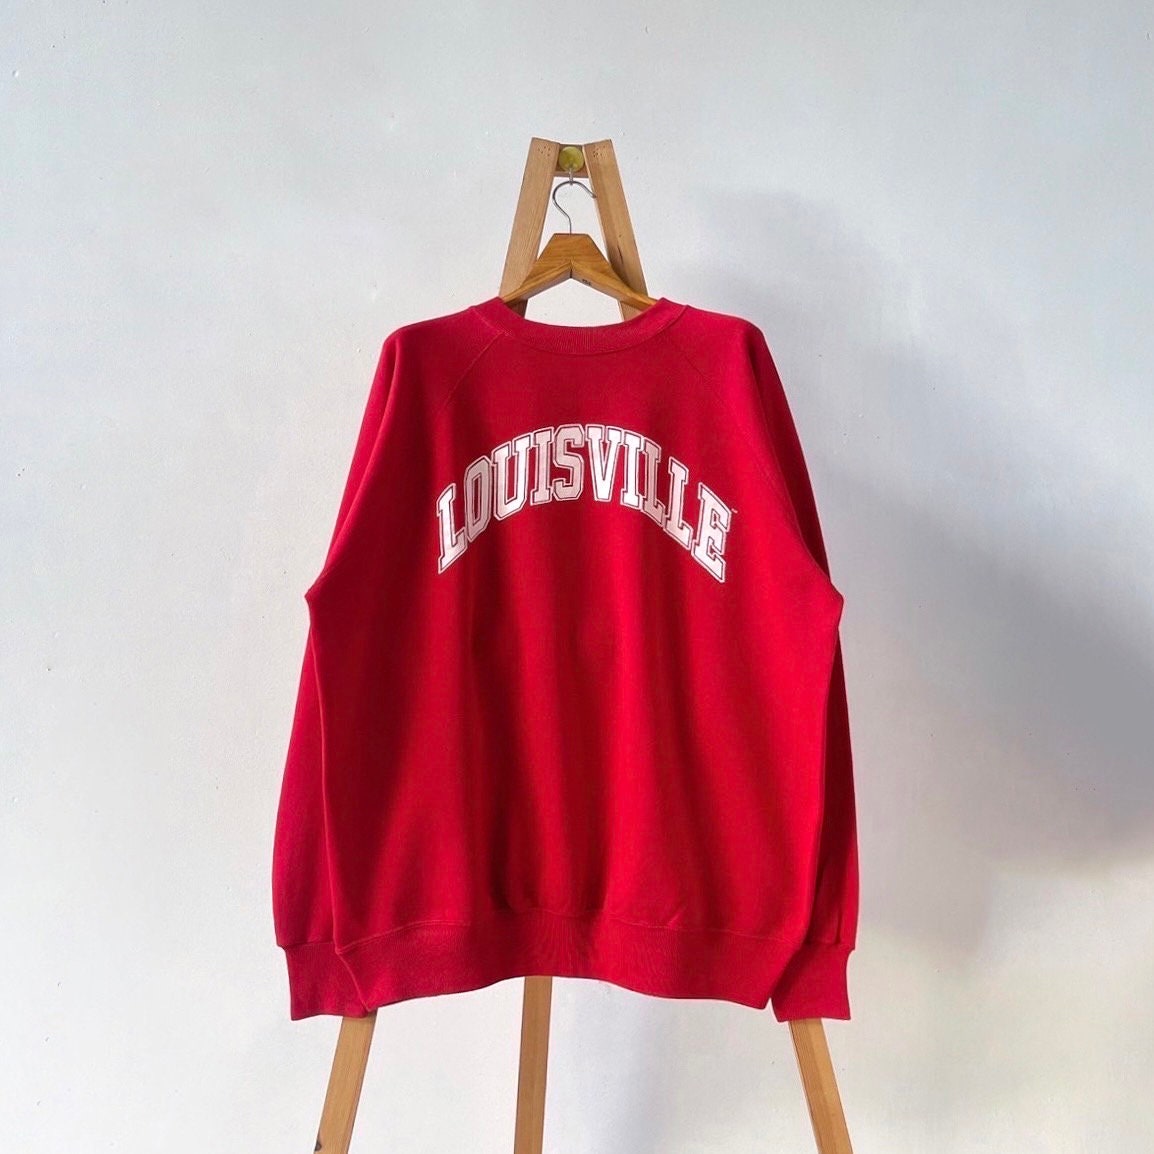 Louisville Est. 1912 Sweatshirt Vintage City Pride Retro 